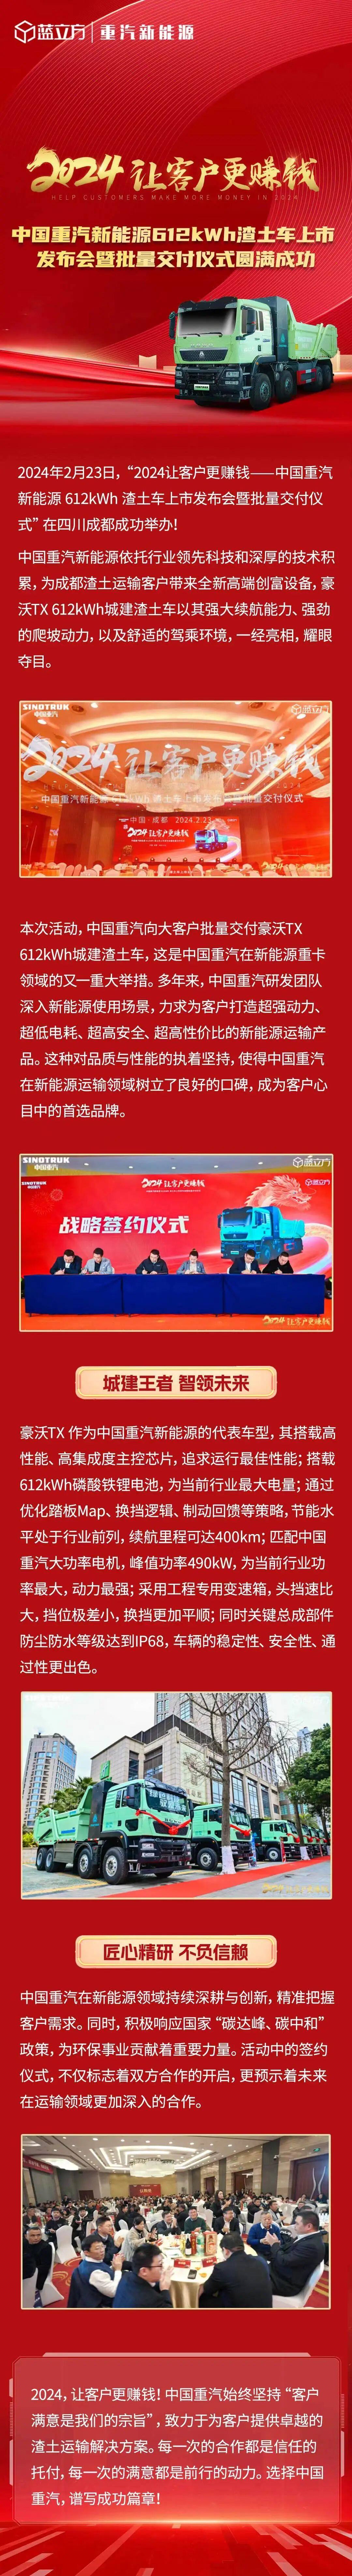 中国重汽新能源612kWh渣土车上市宣告会